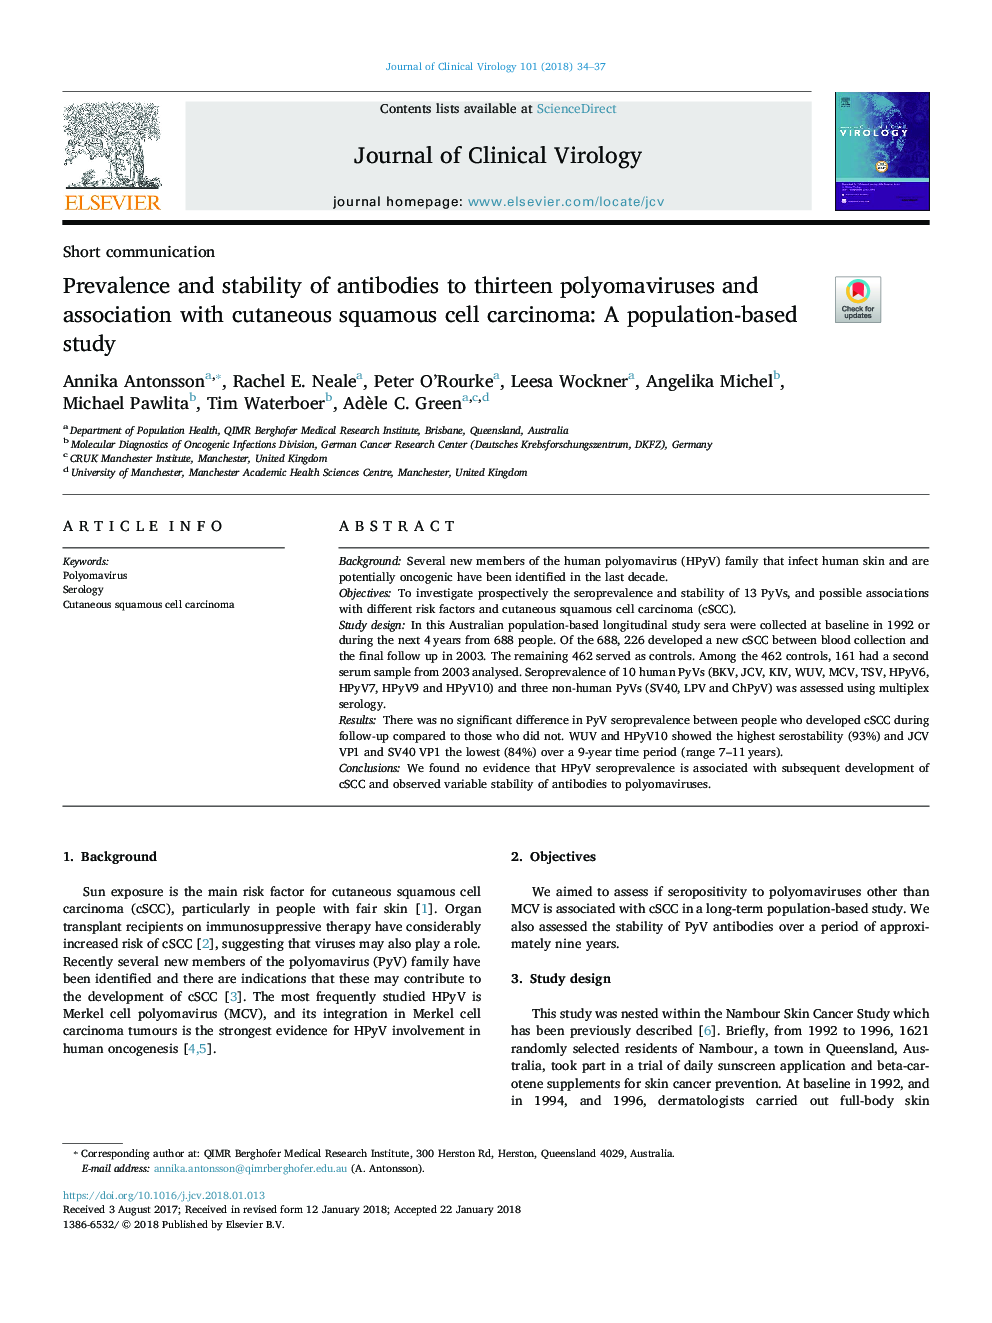 شیوع و پایداری آنتیبادی ها در سیزده پولوموویروس و ارتباط آن با کارسینوم سلول سنگفرشی پوستی: یک مطالعه مبتنی بر جمعیت 